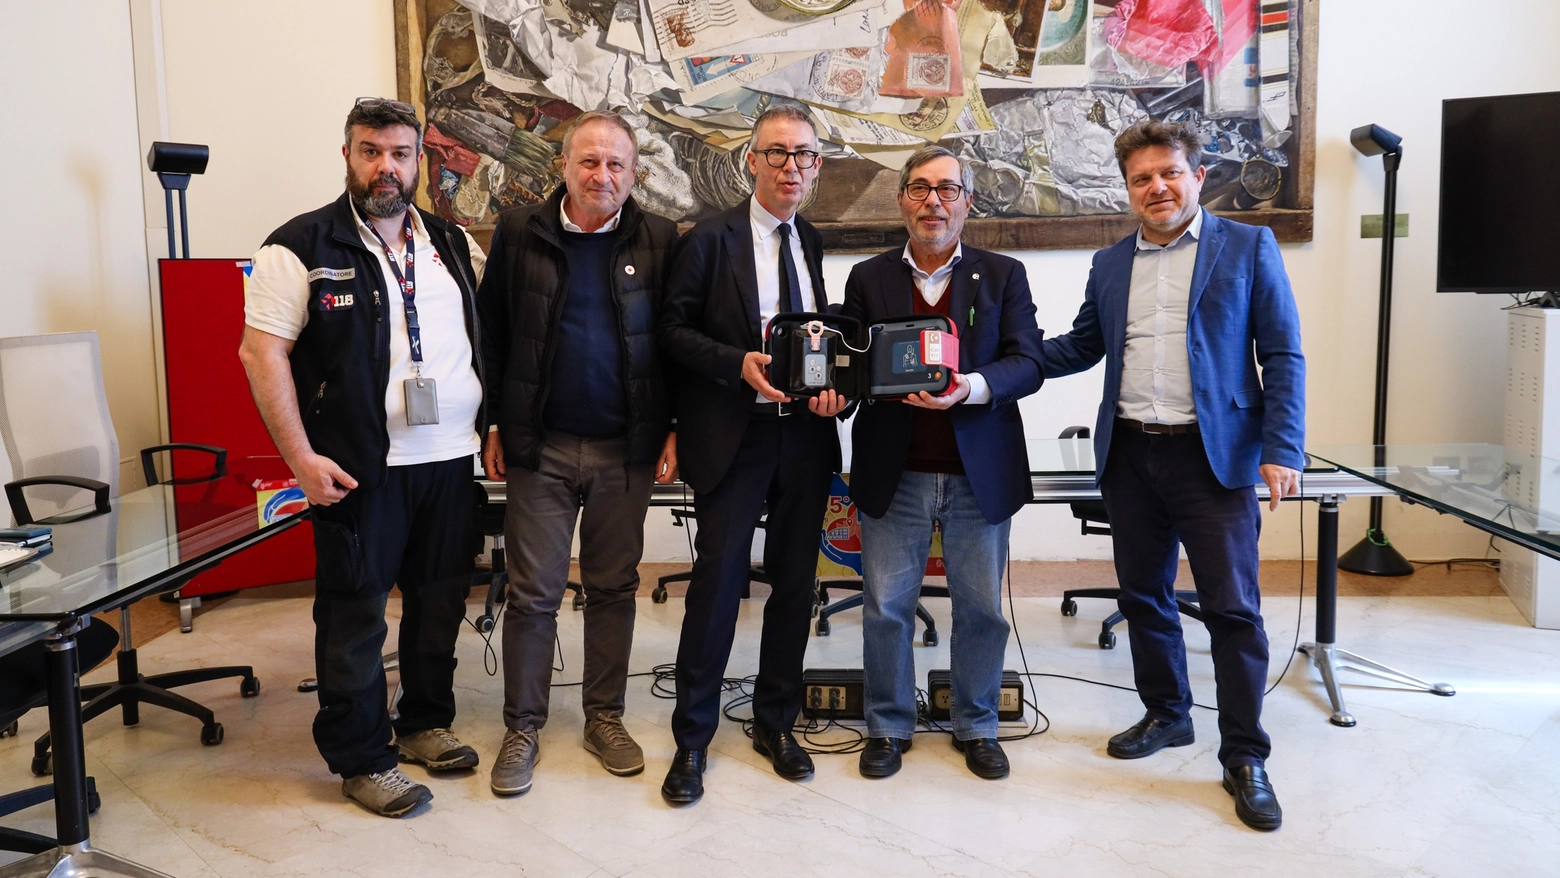 L'Avis di Bologna dona 10 defibrillatori alle scuole (Fotoschicchi)